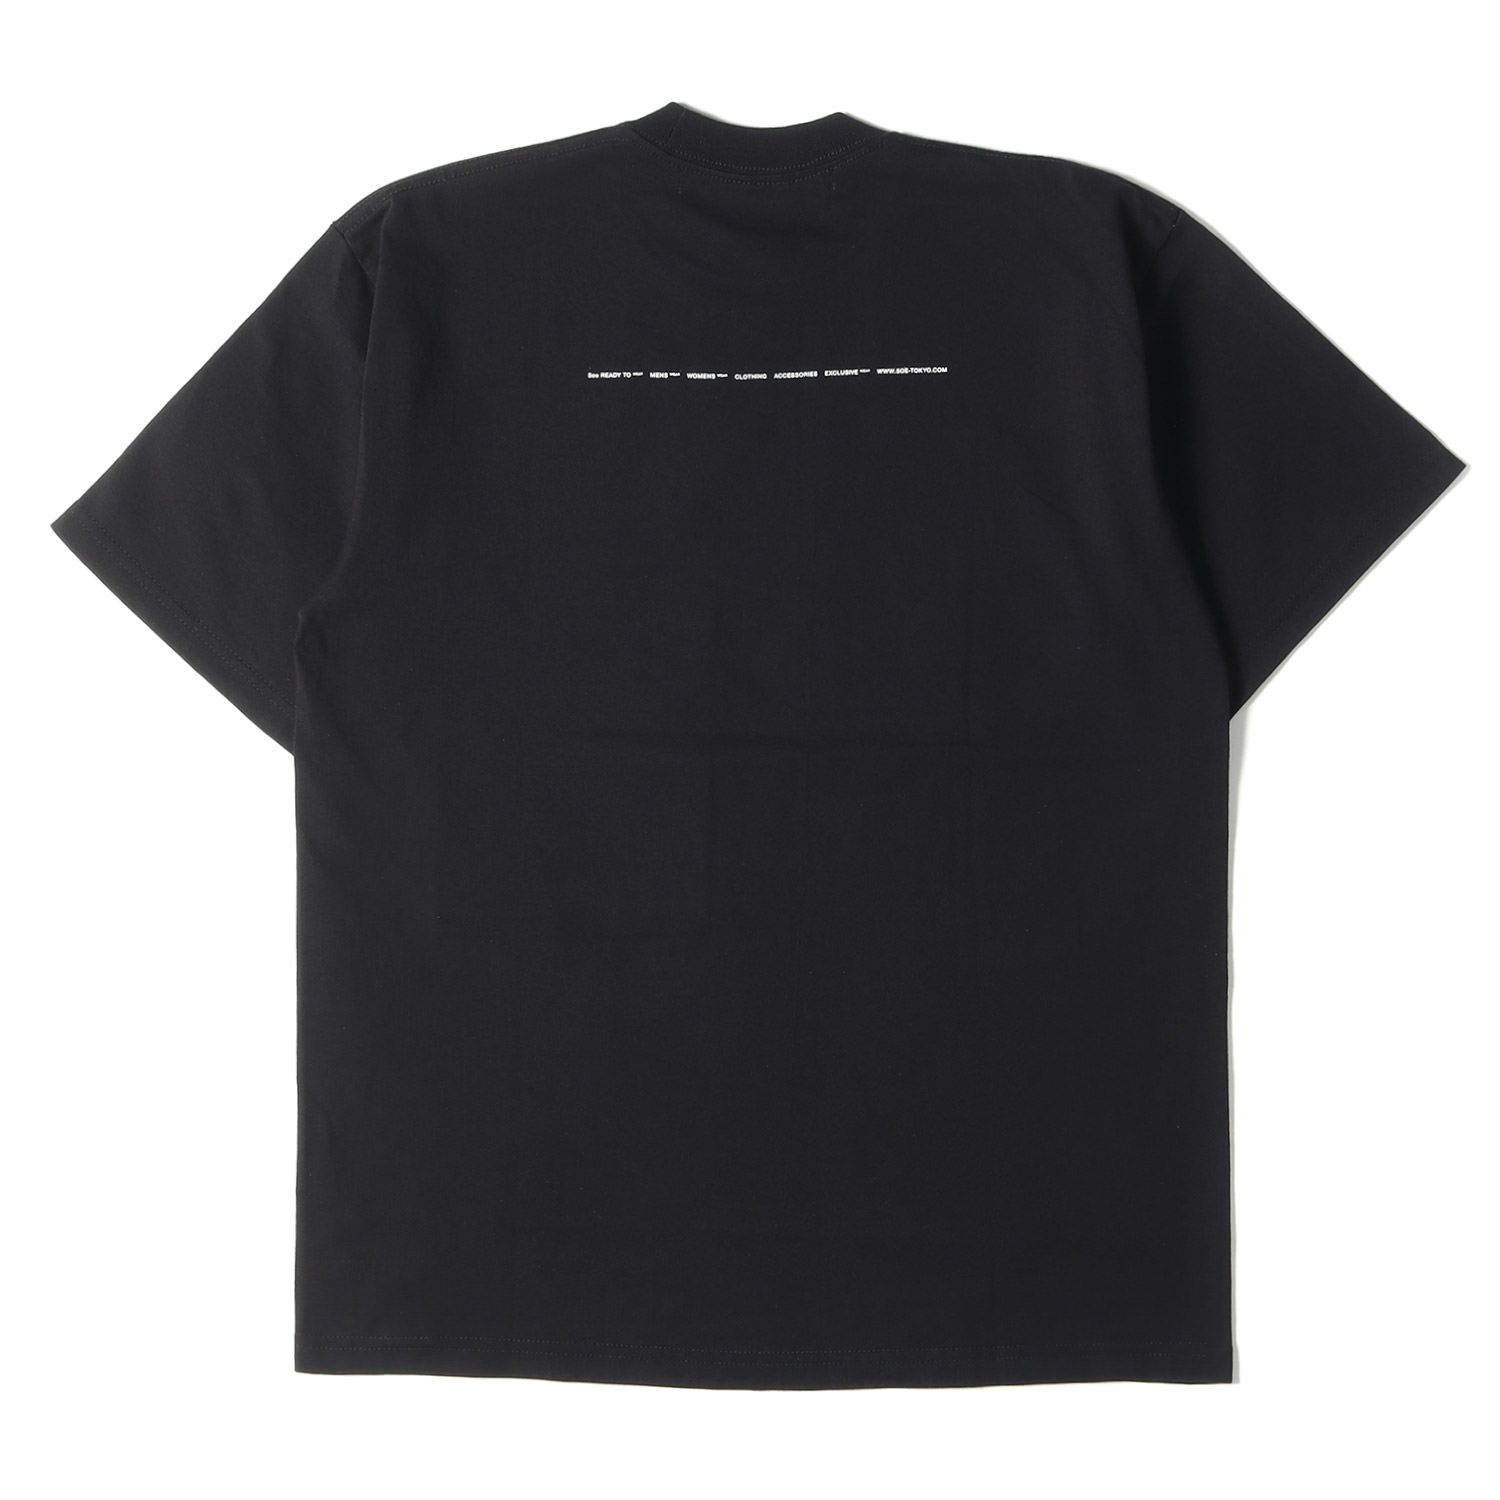 soe ソーイ Tシャツ サイズ:1 バックロゴ 異素材ビッグポケット ヘビーウェイト クルーネック 半袖 Tシャツ READY TO WEAR  ブラック 黒 トップス カットソー